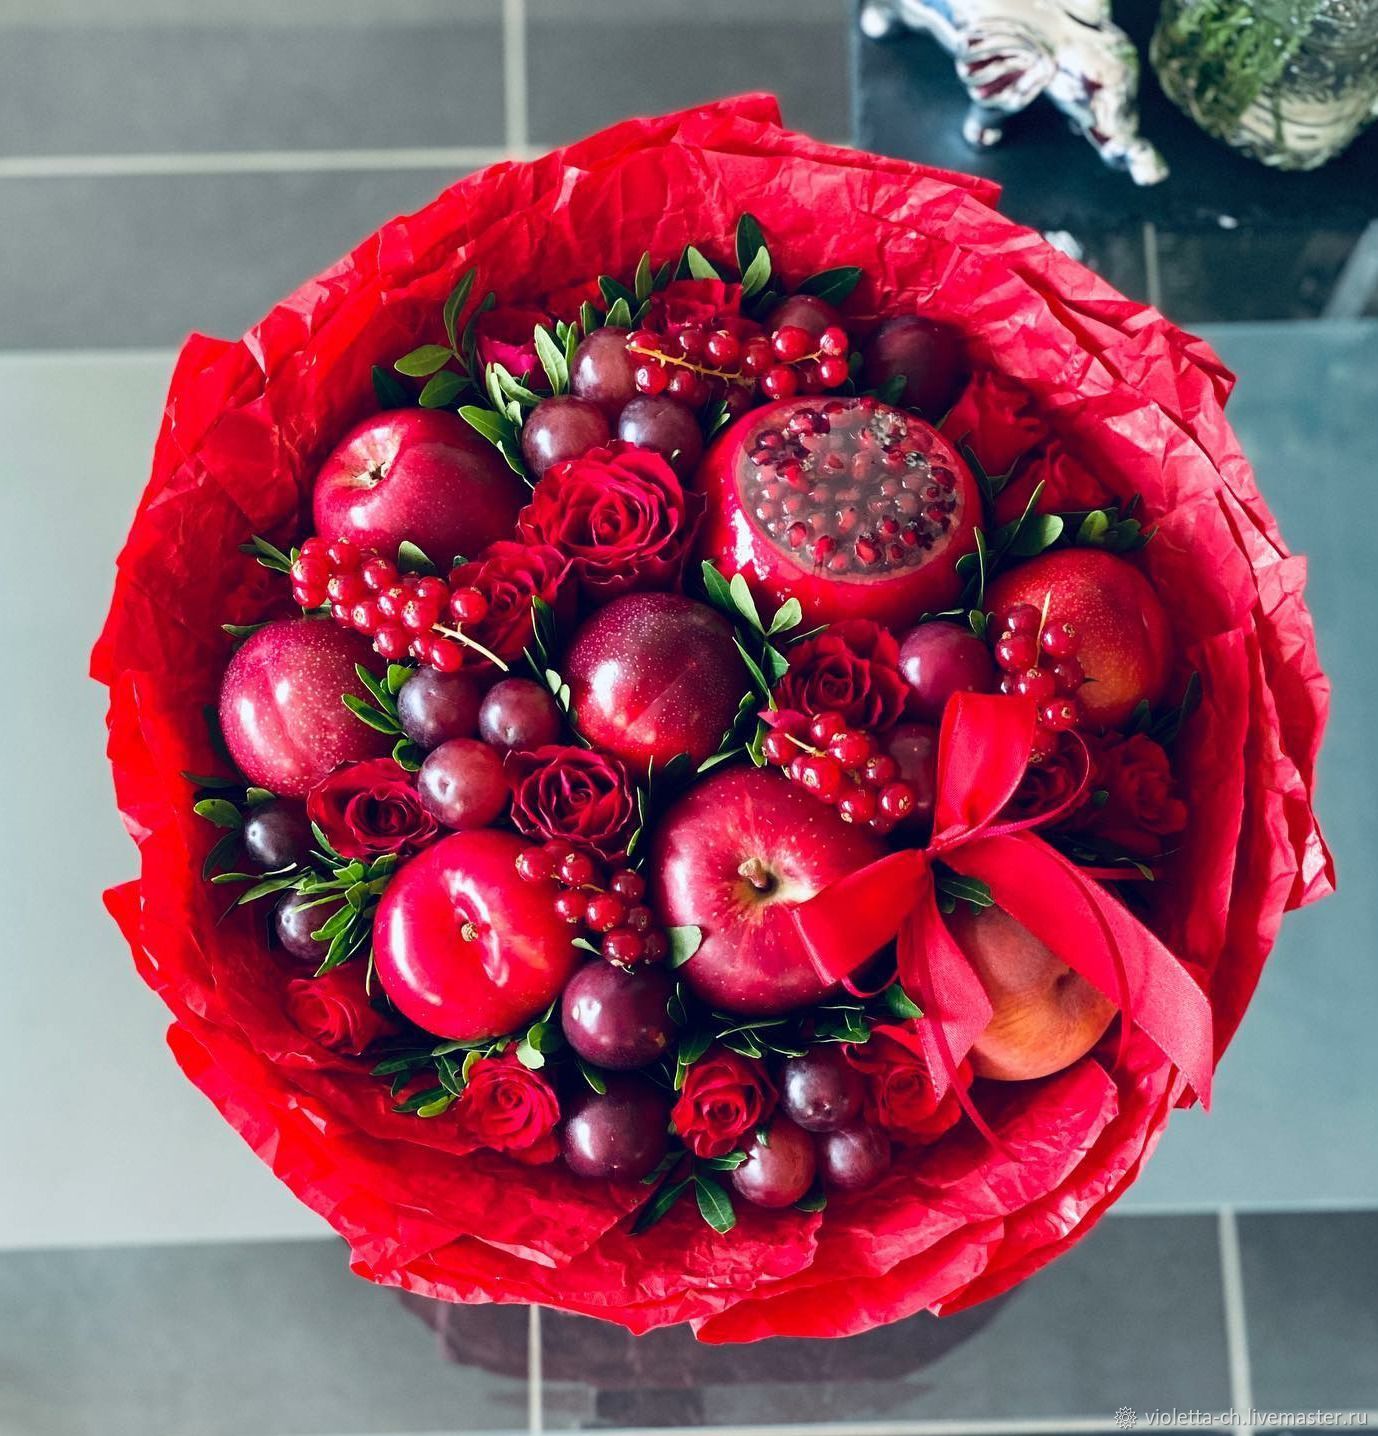 Фрукты и ягоды в подарок